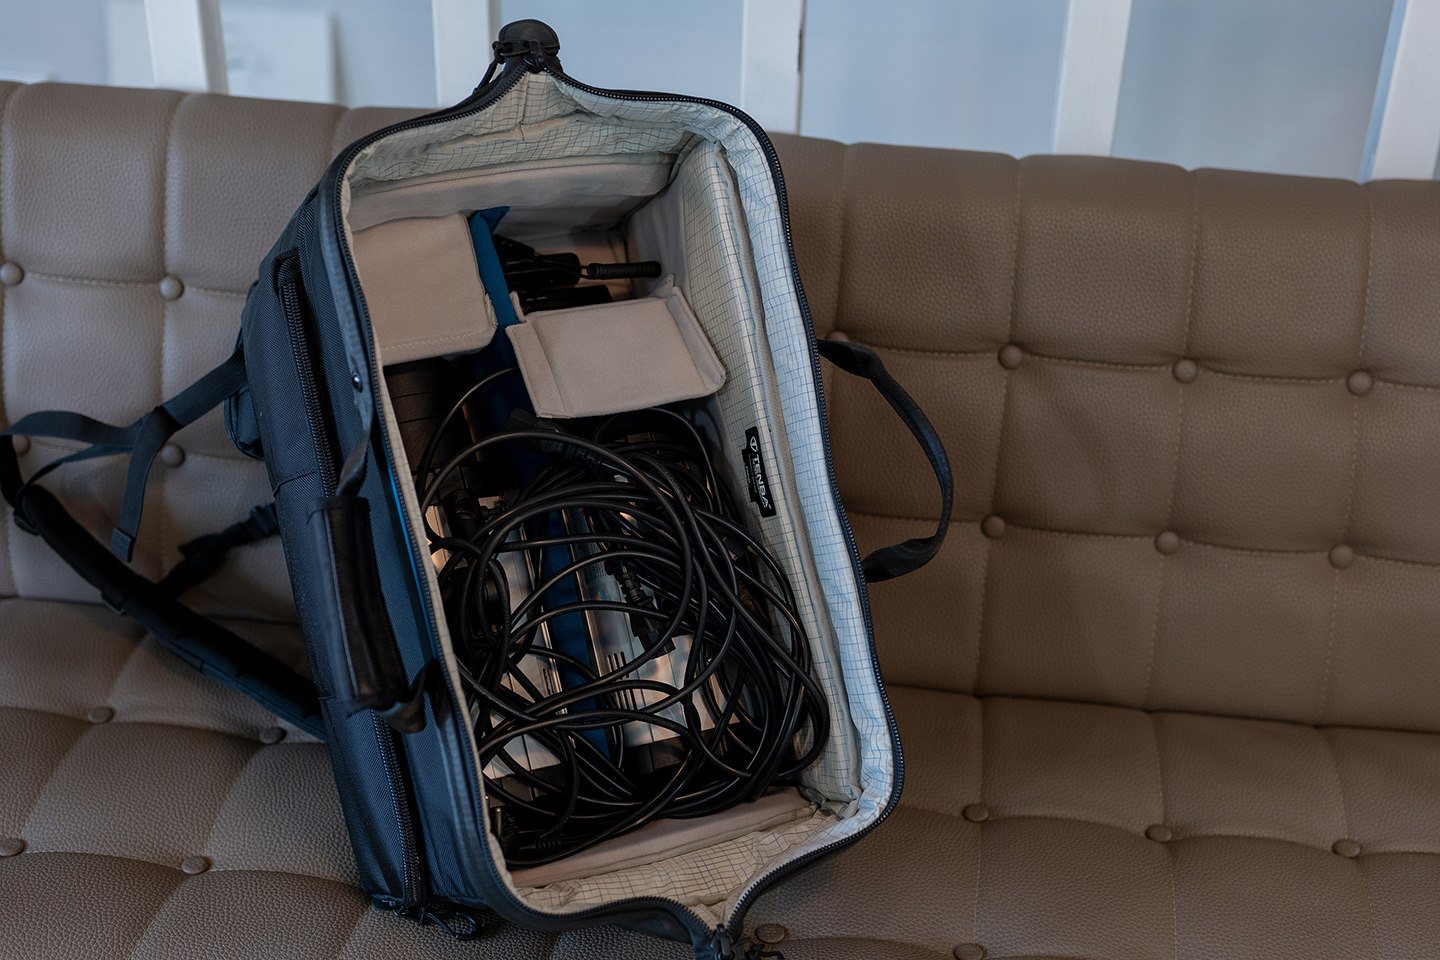 조명 두 개와 동조기등 액세서리를 한 가방에 모두 담을 수 있을만큼 내부 공간이 널찍하다